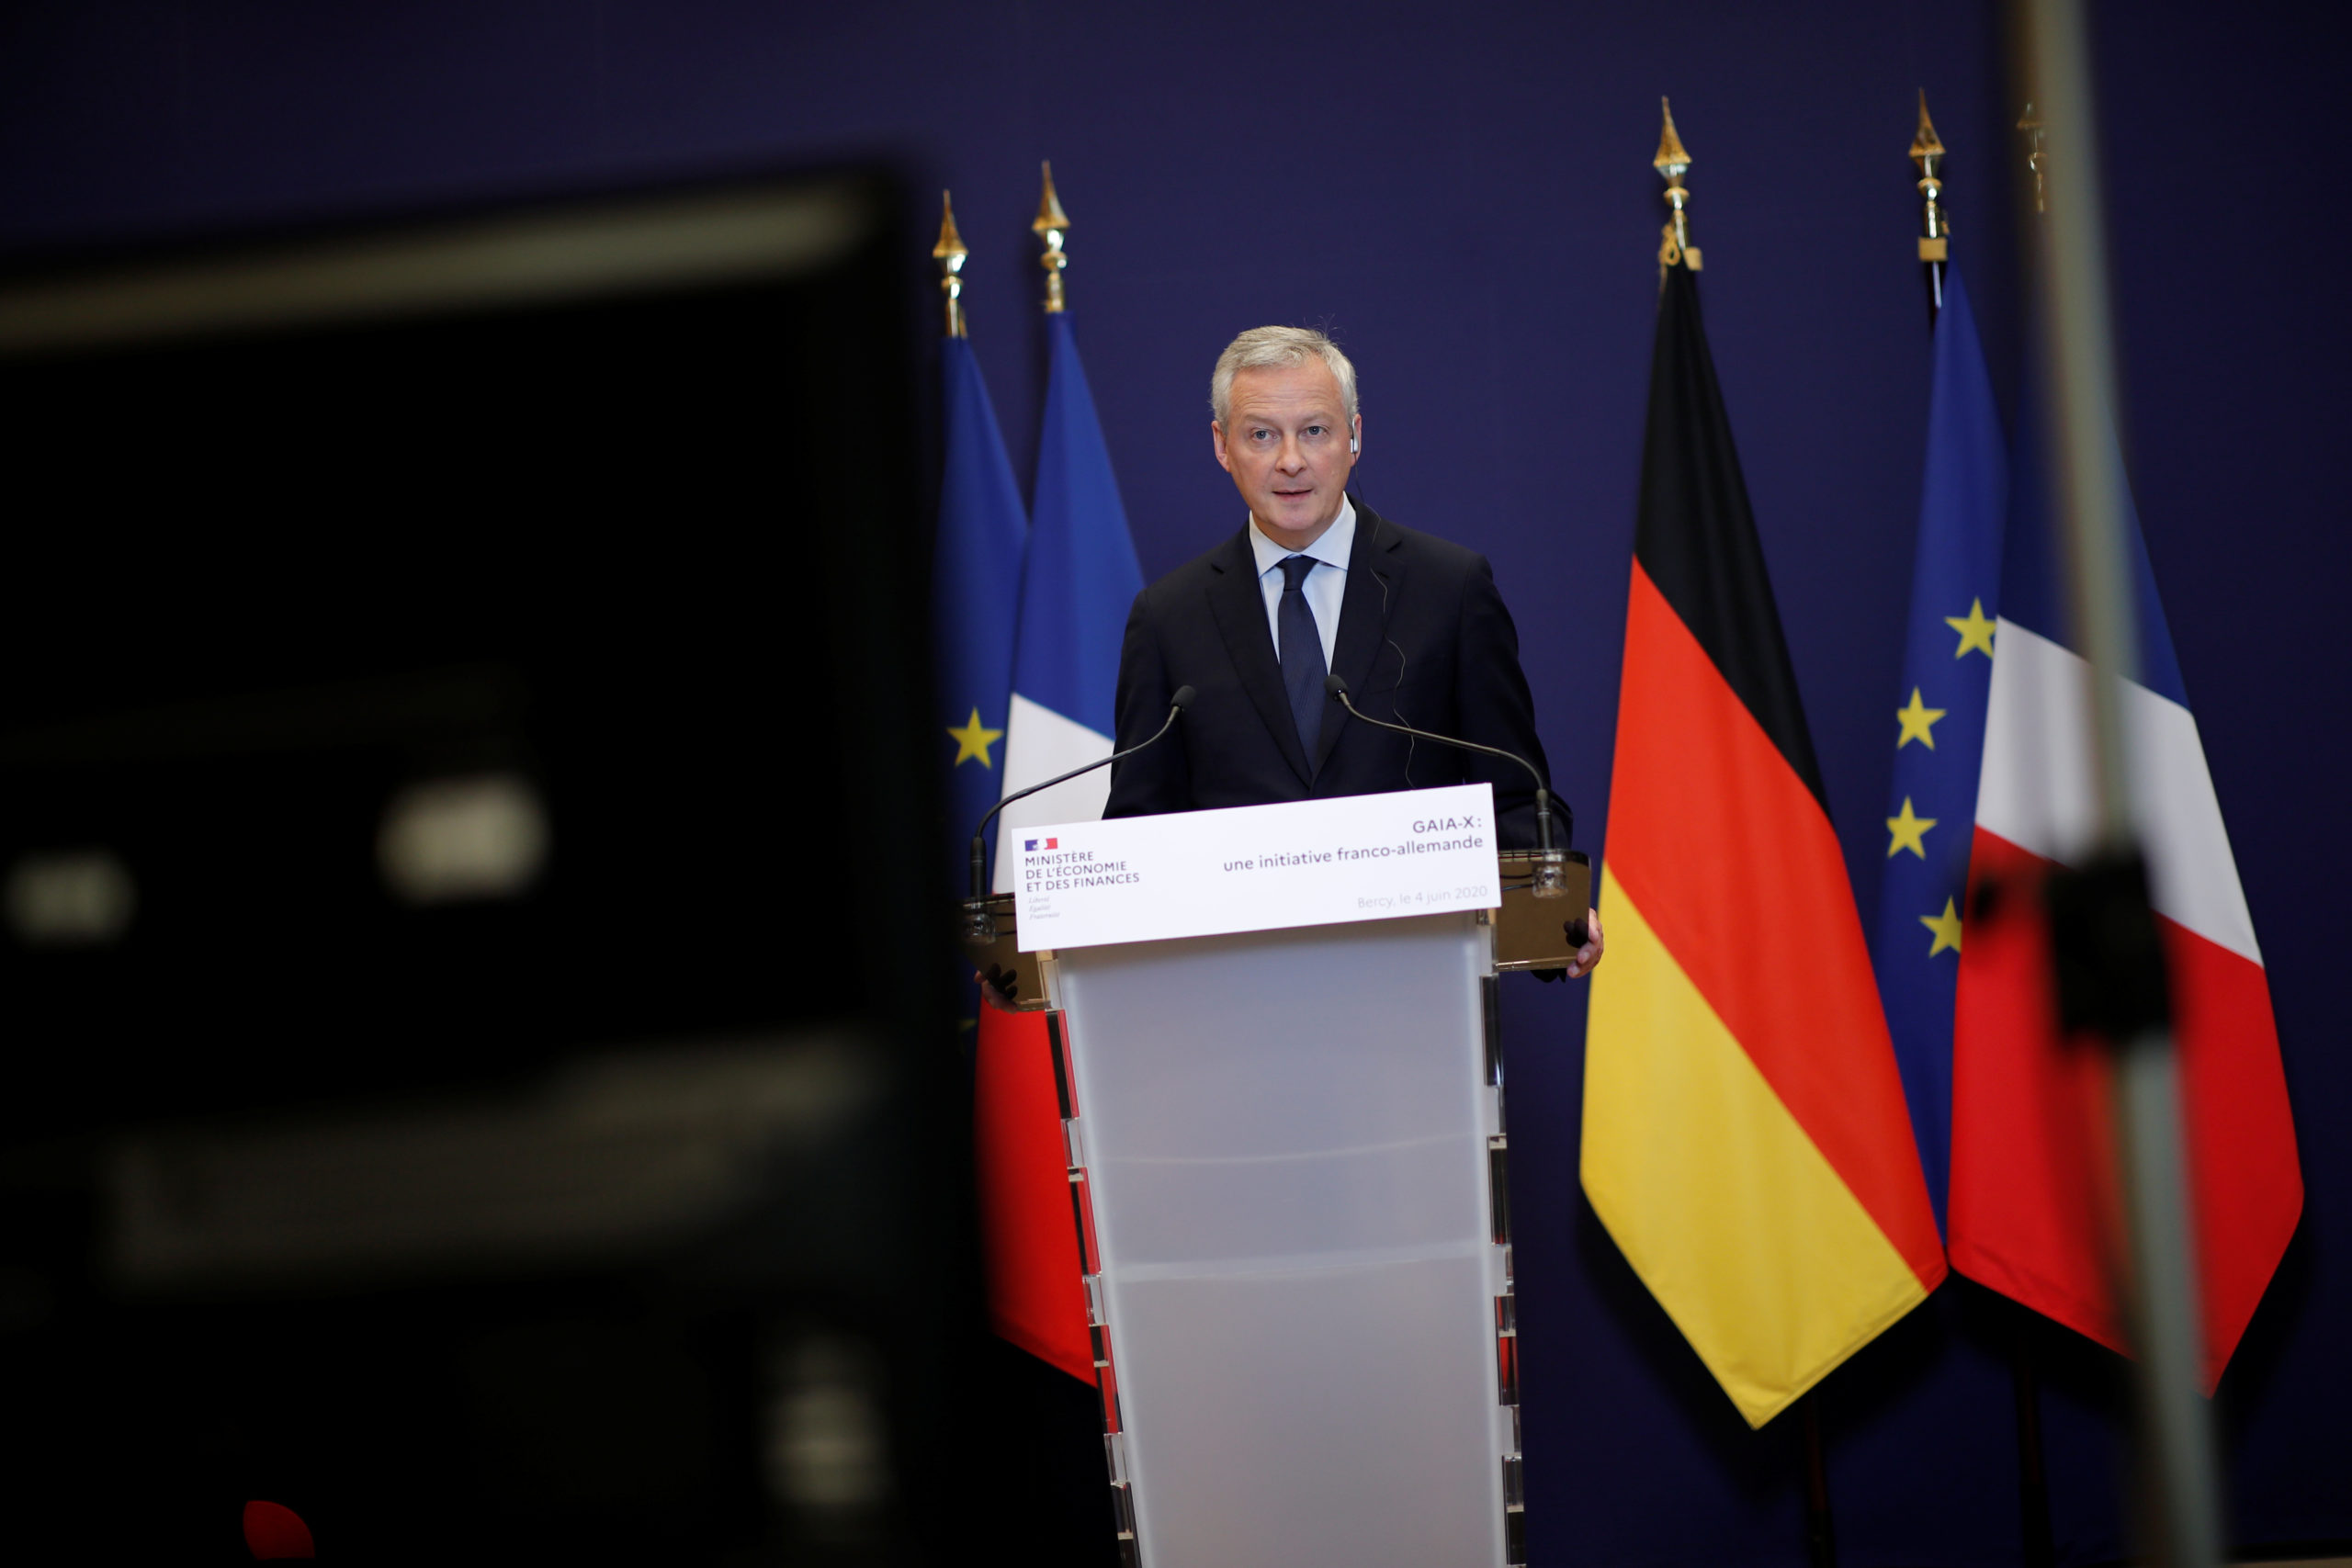 Paris vise une alliance avec l'Allemagne dans l'hydrogène, déclare Le Maire